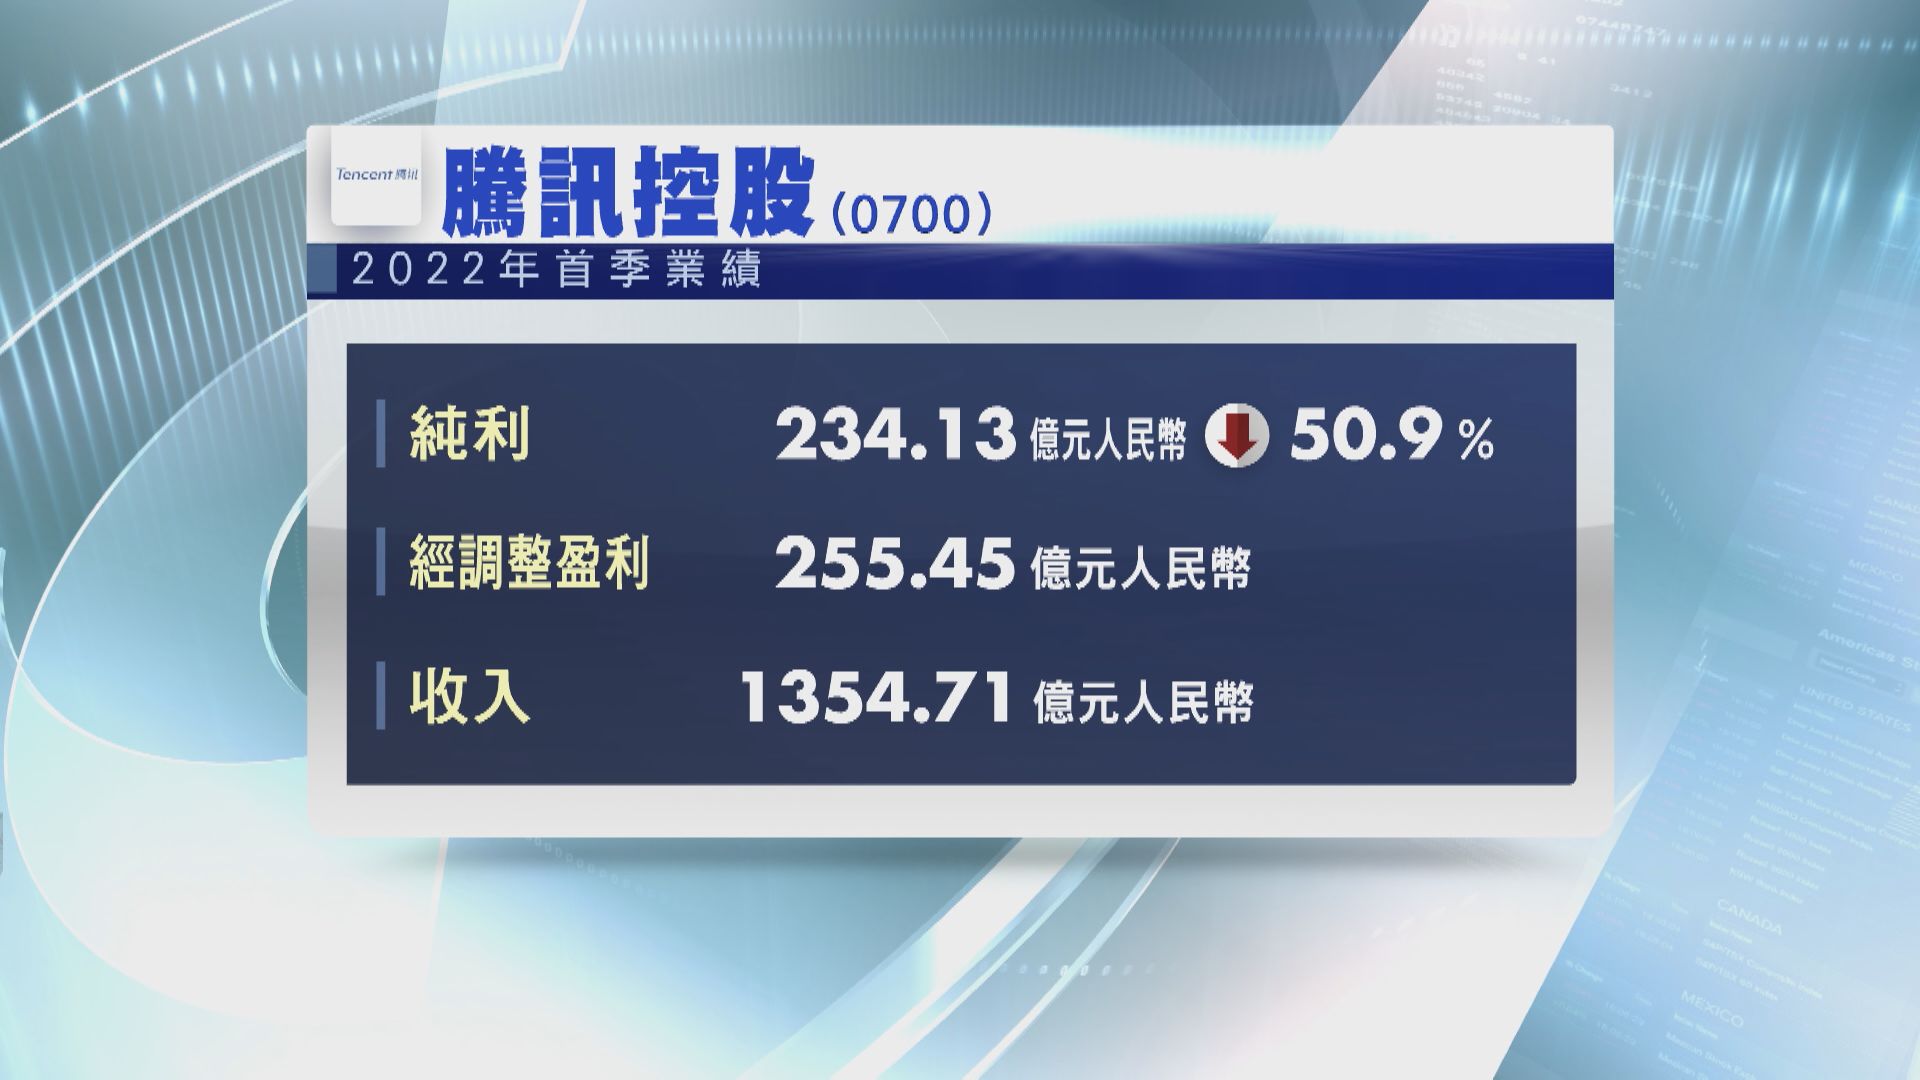 【股王業績】騰訊首季少賺50.9%  遜預期